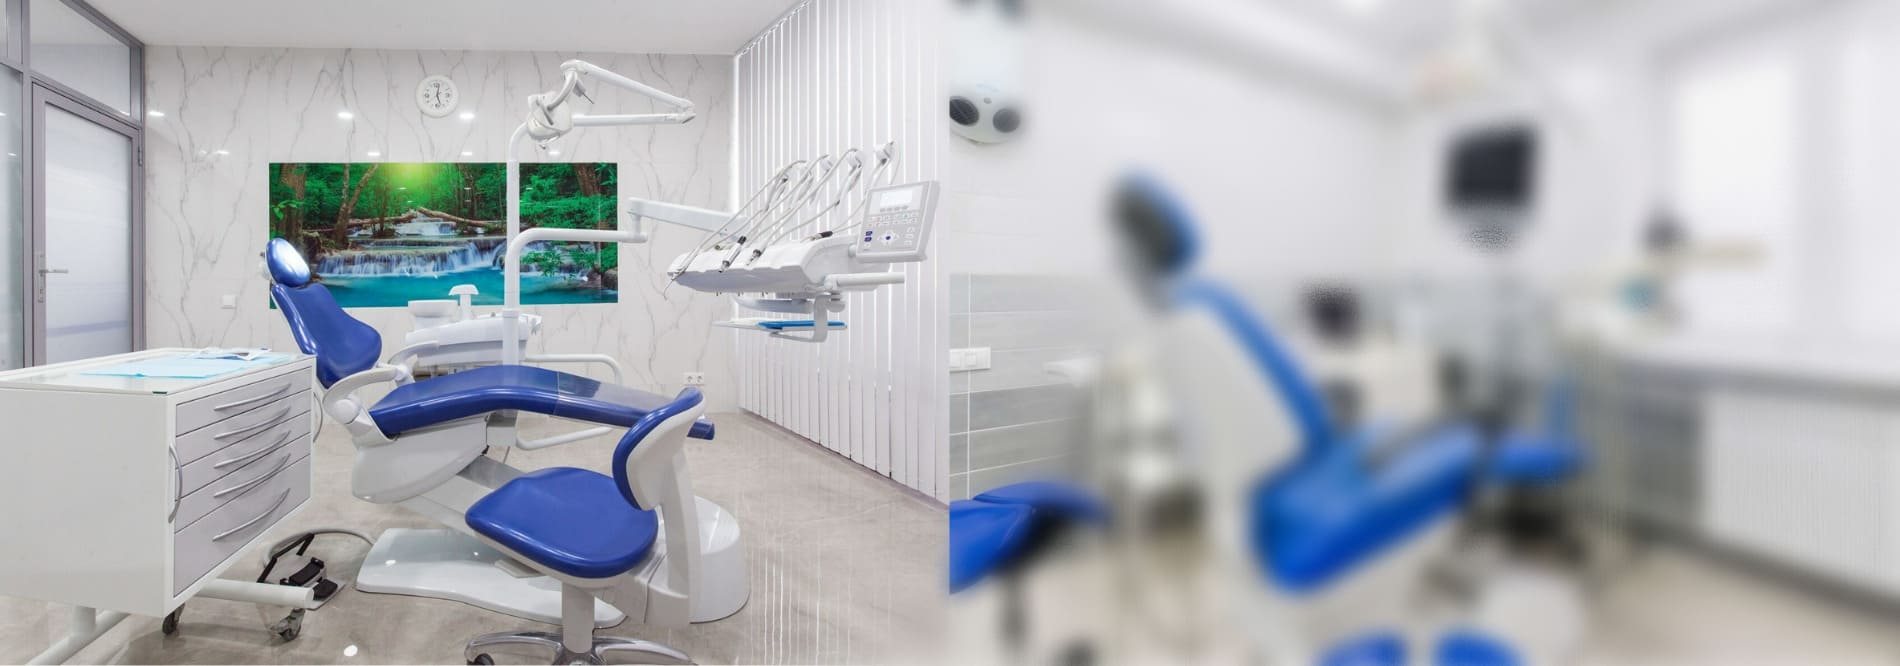 Проектирование стоматологии в Краснодаре Шахты